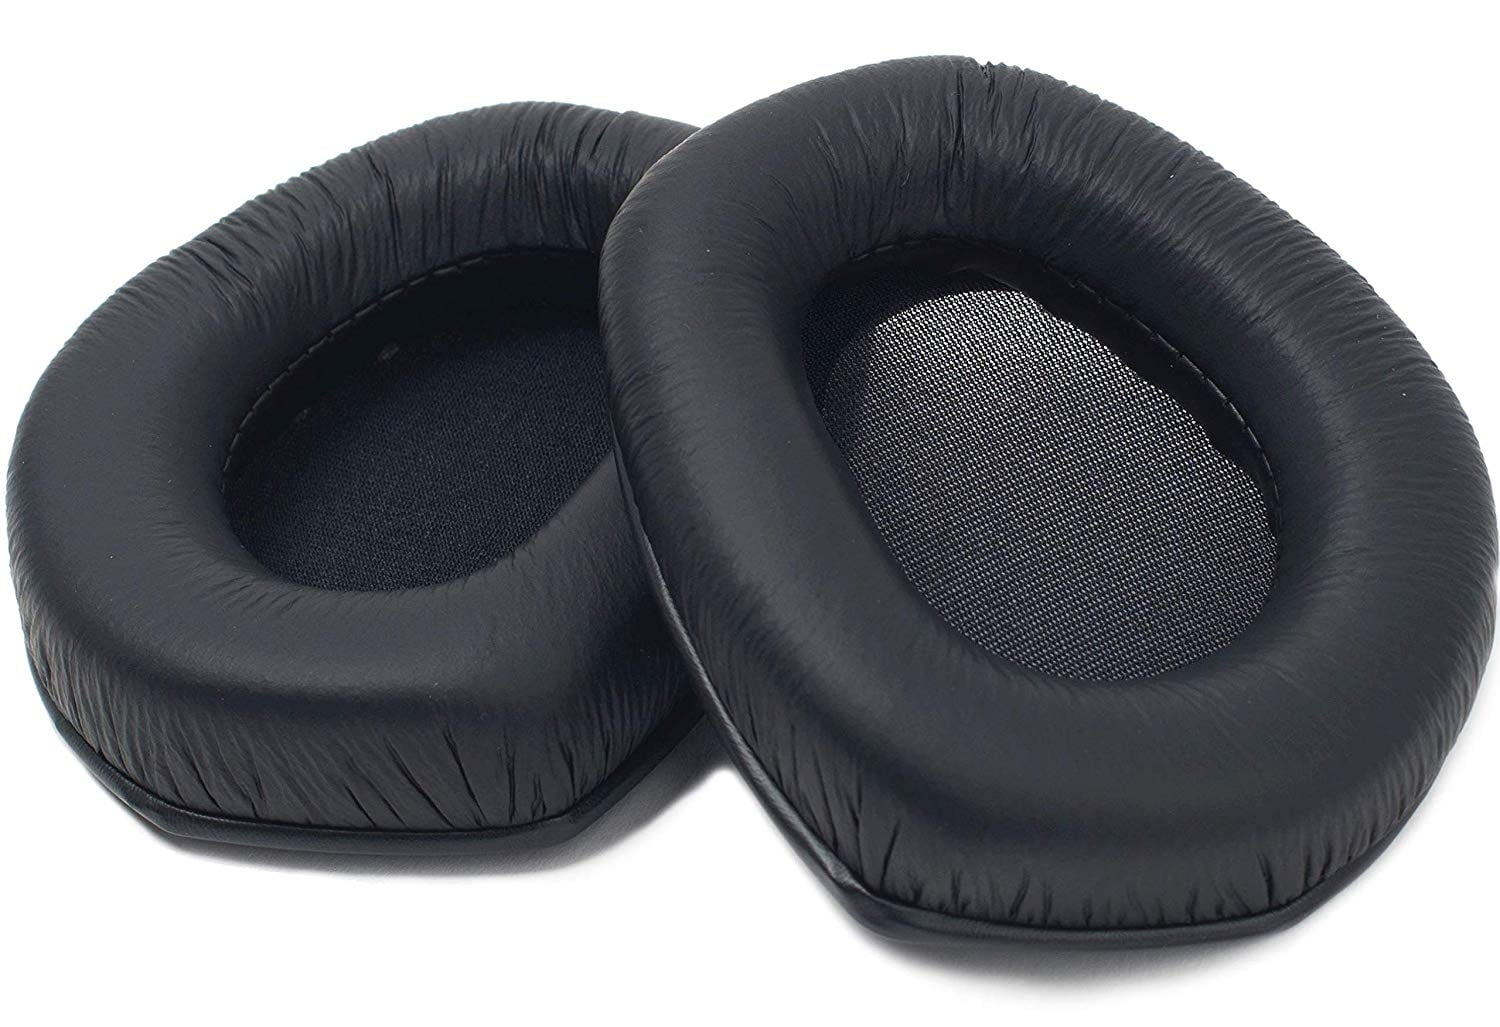 genuine-sennheiser-replacement-foam-ear-pads-cushions-for-sennheiser